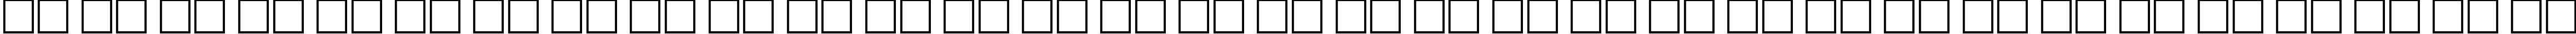 Пример написания русского алфавита шрифтом BauhausHeavyCTT